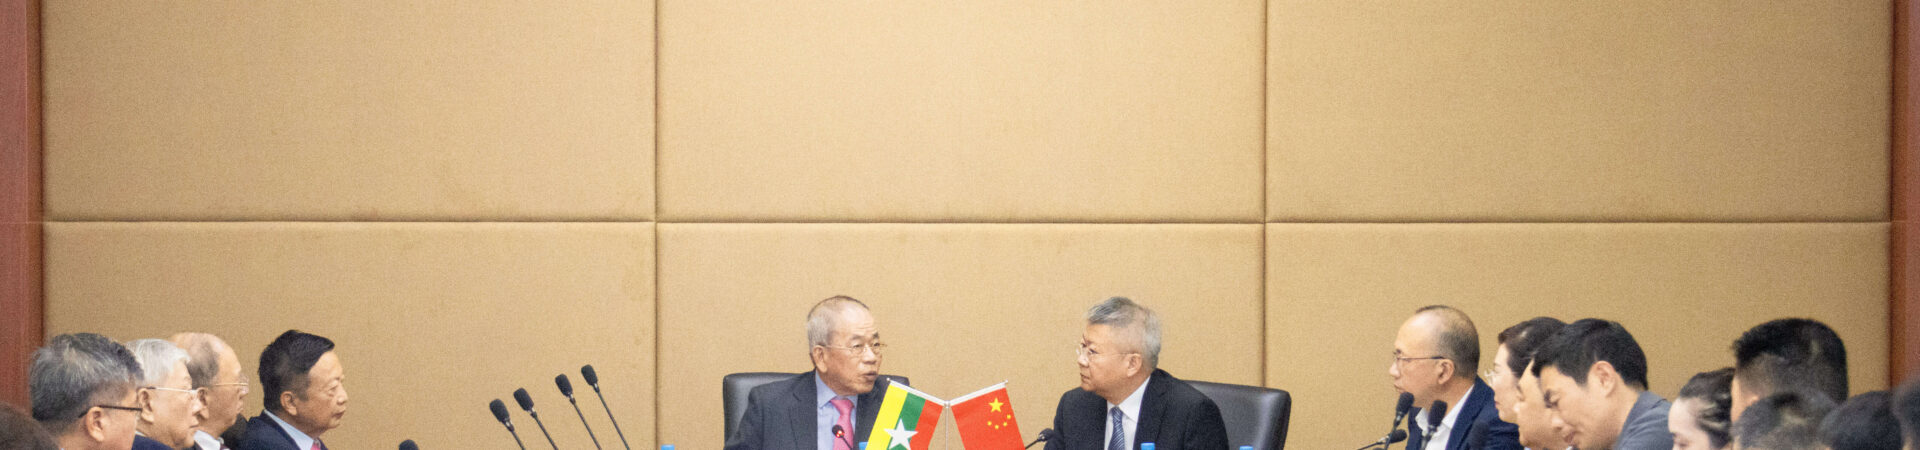 温州市海外联谊会会长、温州市人民政府侨务办公室主任汪驰为团长的代表团拜访缅甸中华总商会